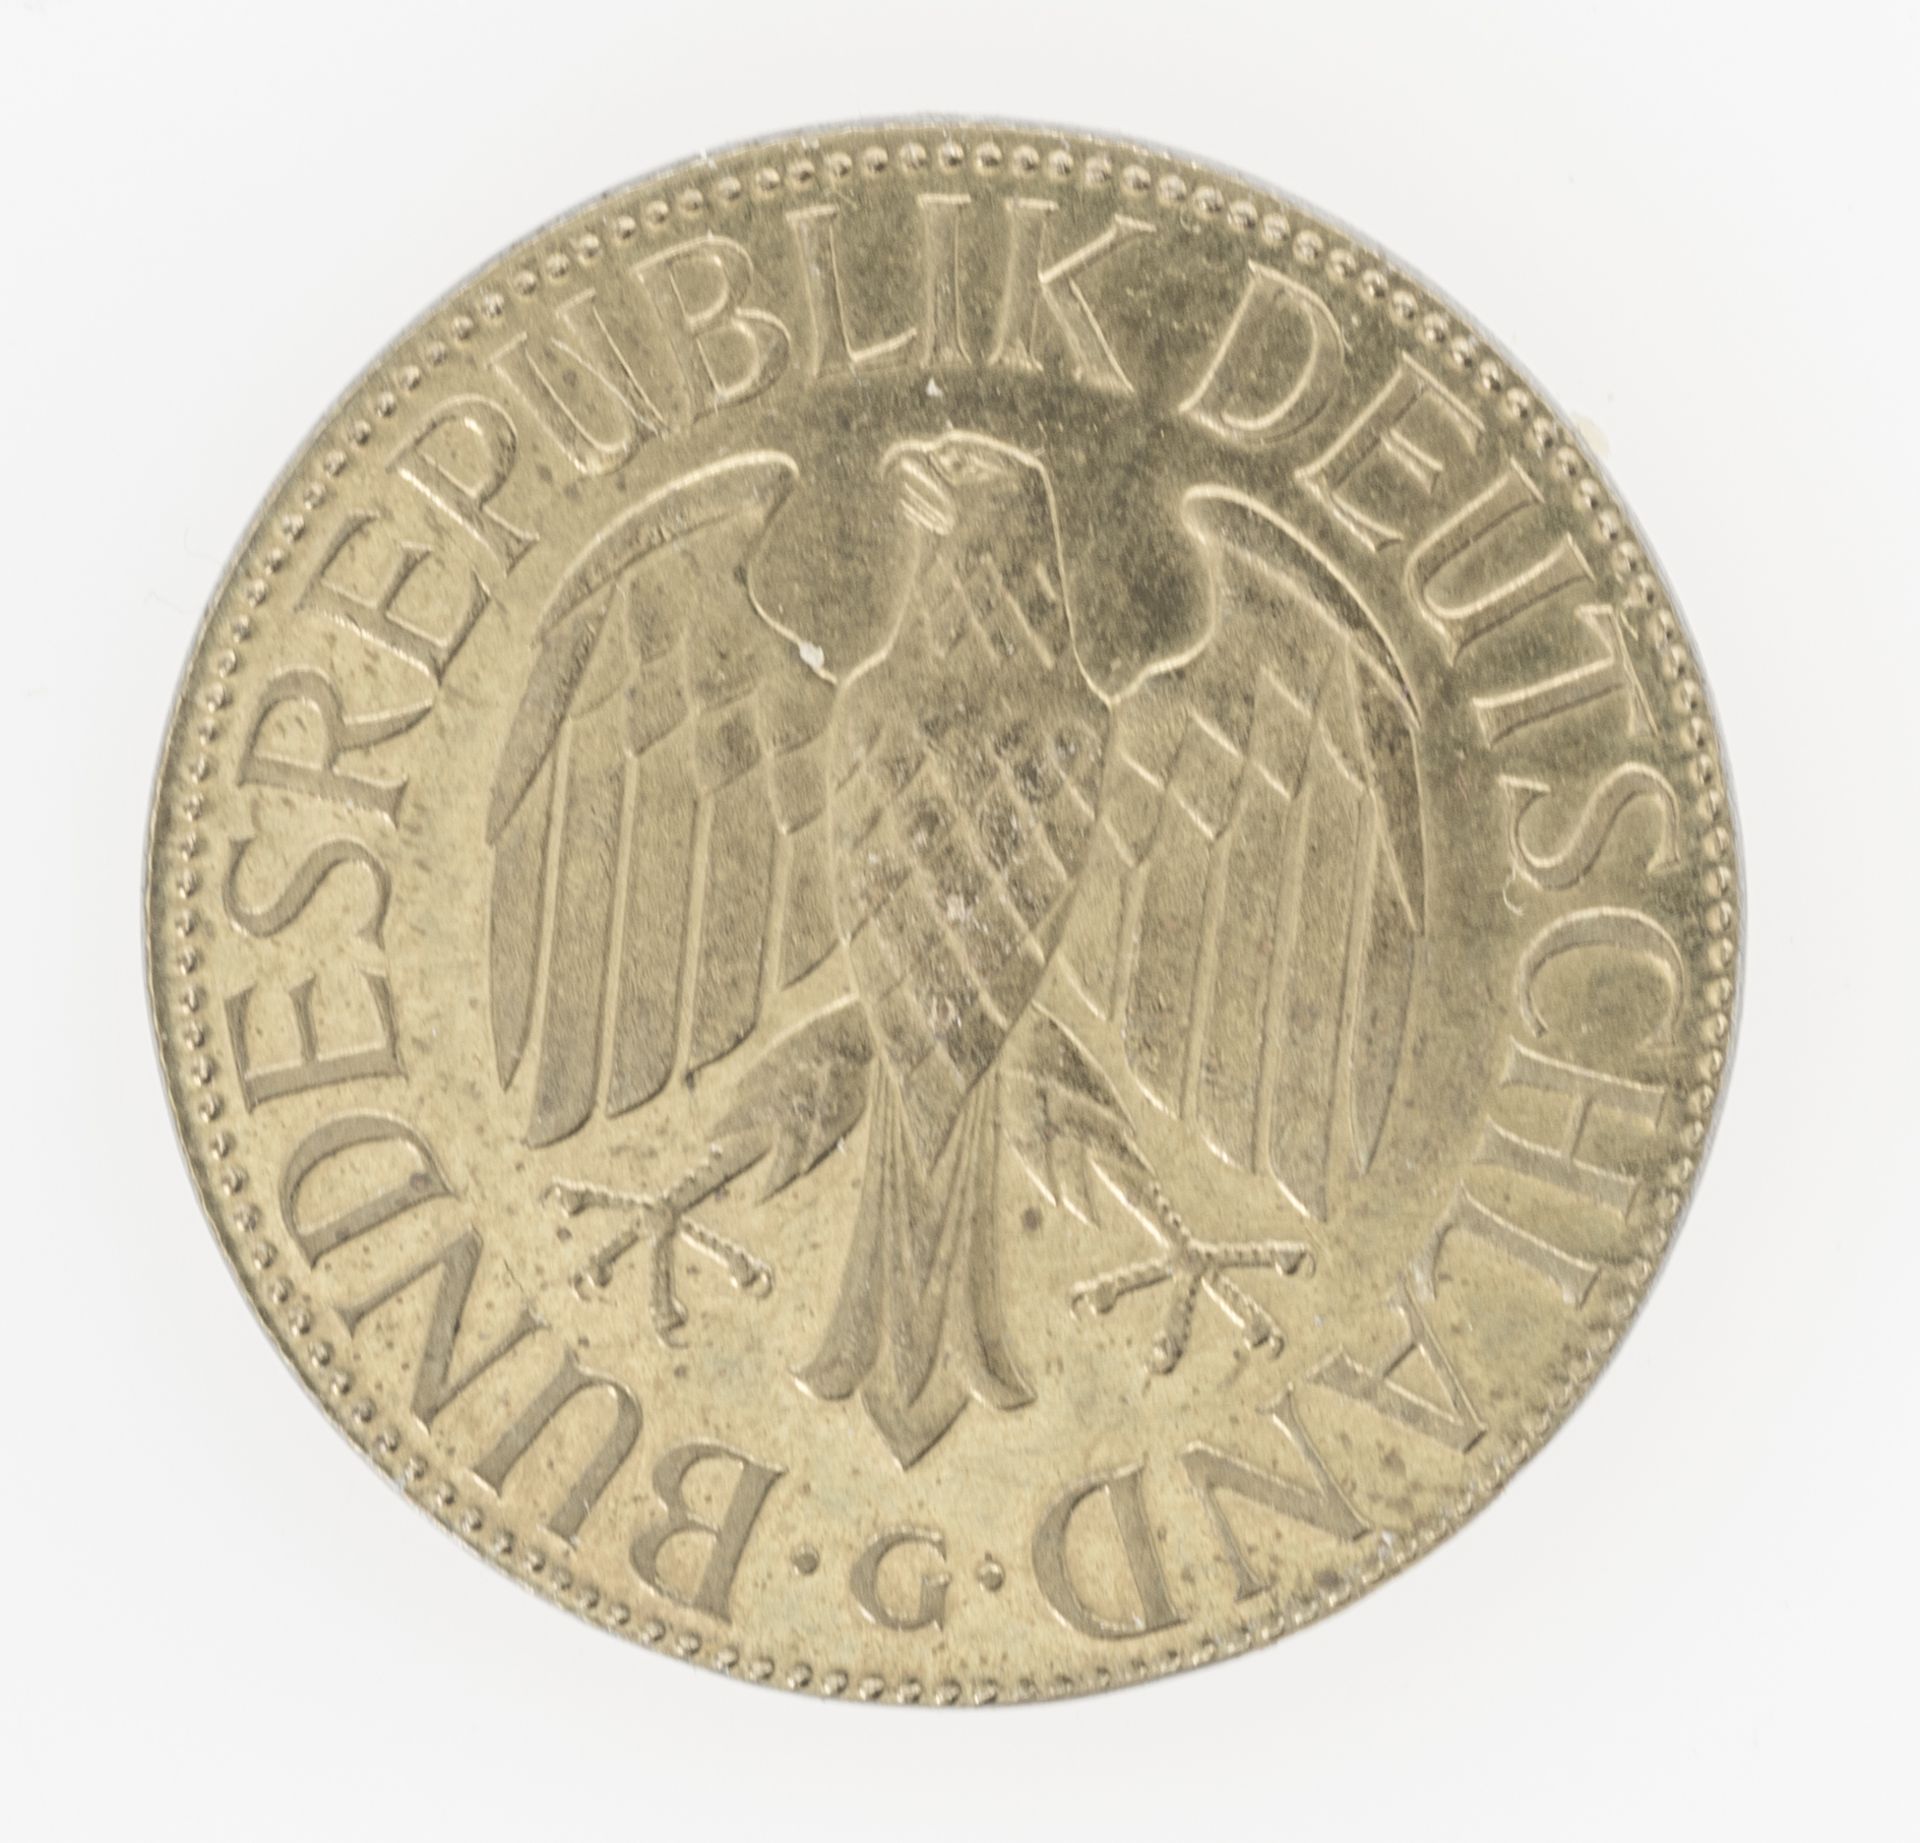 BRD 1993 G, 1.- DM - Münze, Fehlprägung: zu kleiner und zu dünner Schrötling. Vergoldet? - Image 2 of 2